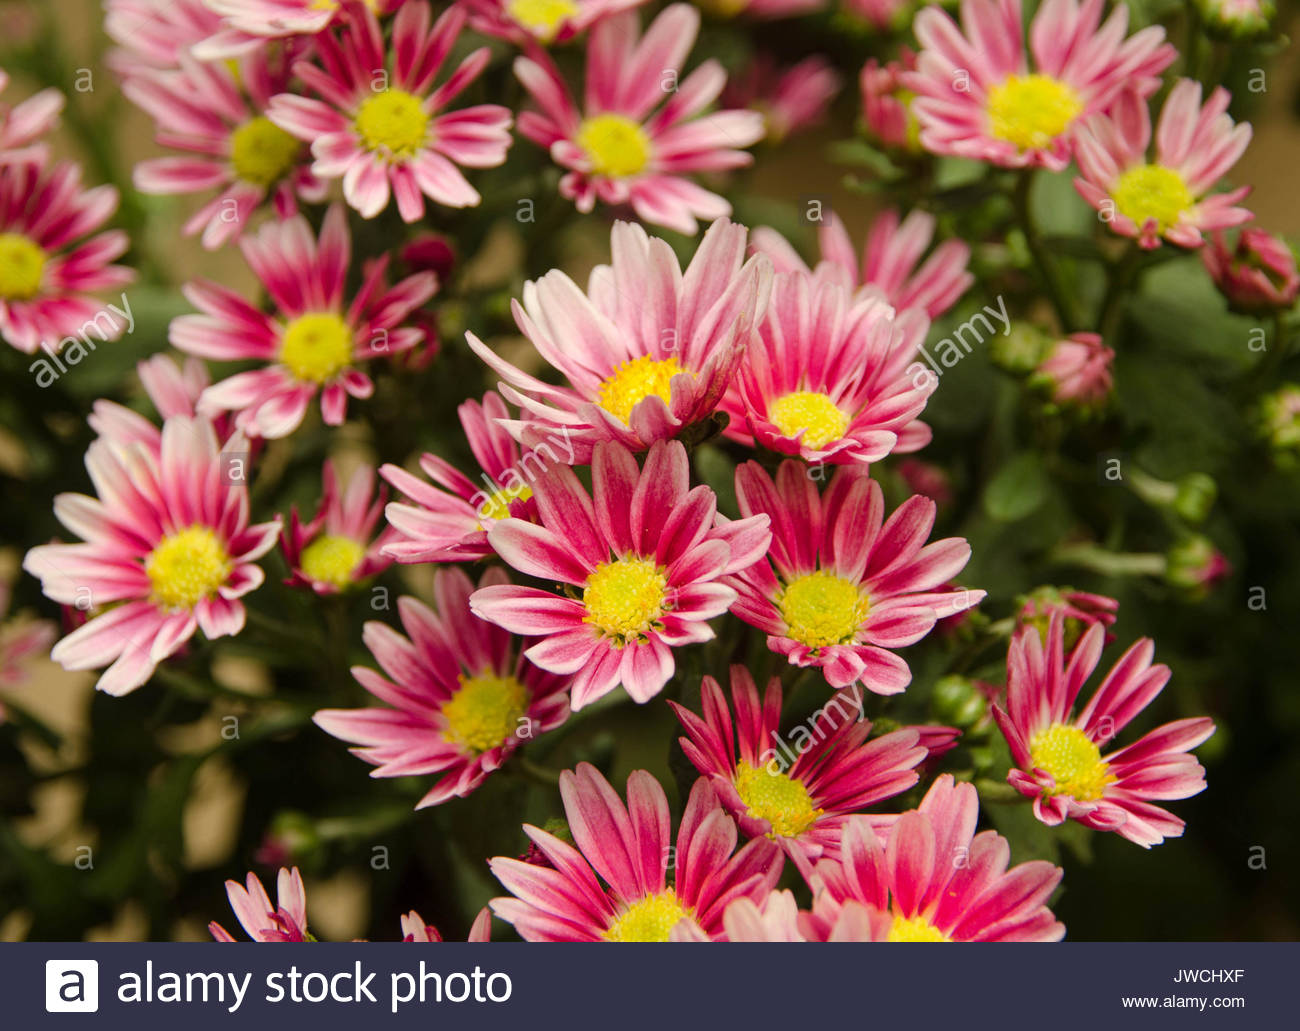 Chrysanthemum Morifolium Stock Photos & Chrysanthemum Morifolium Stock ...